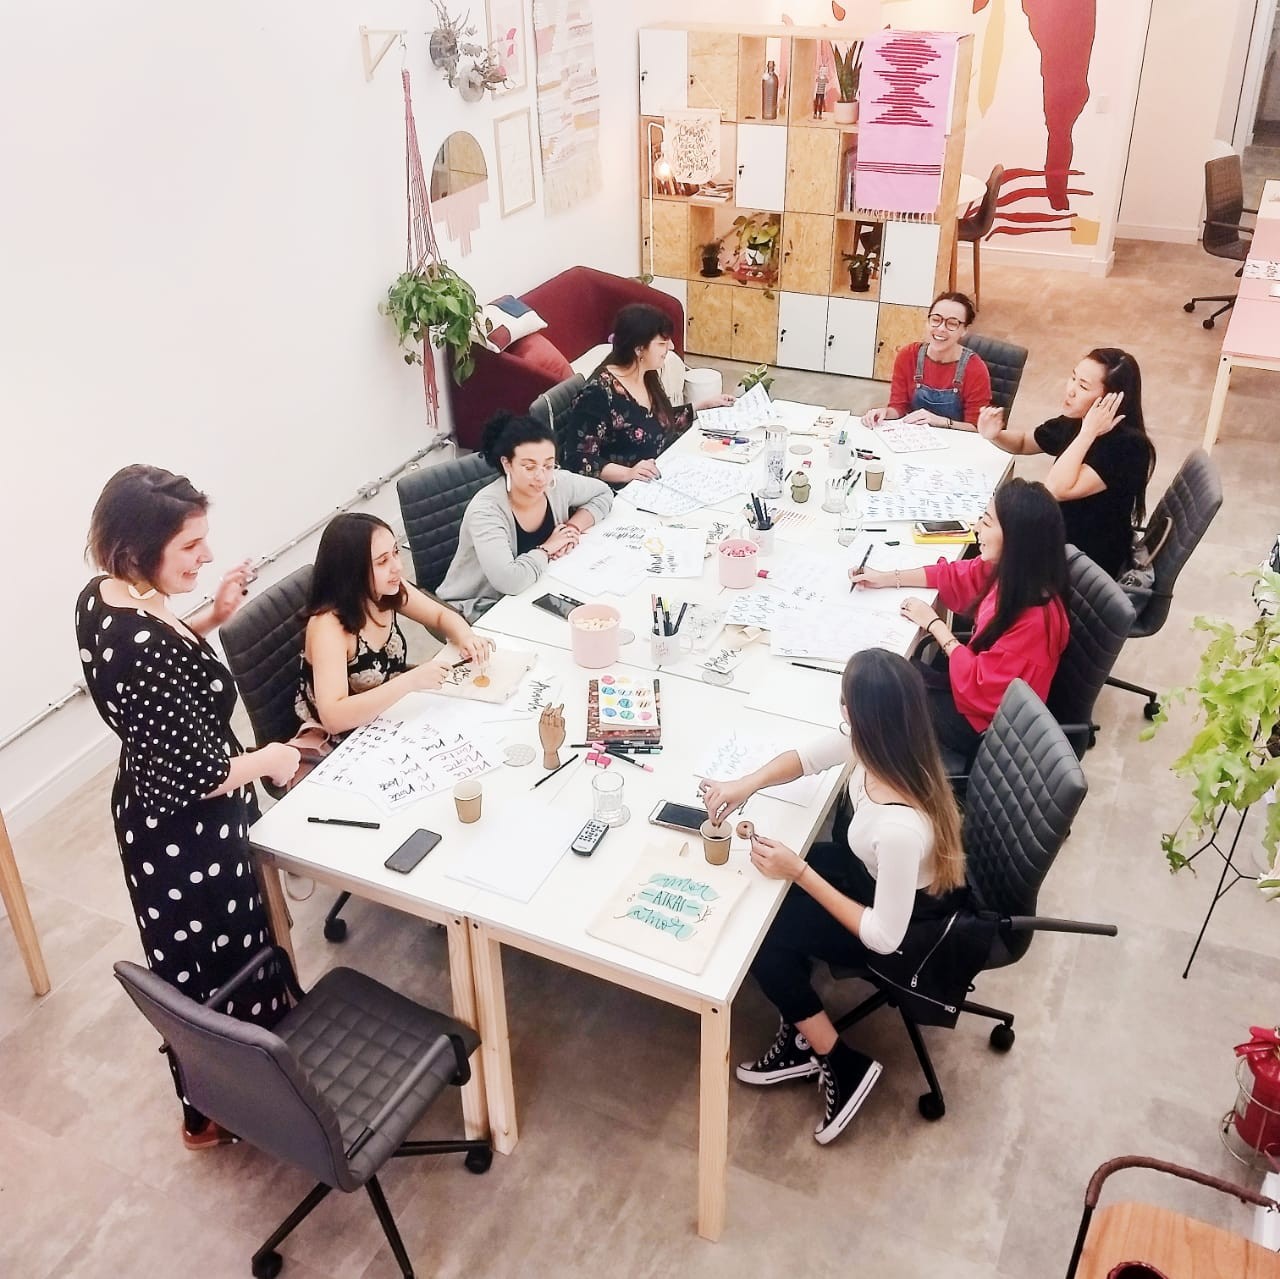 Coworking estimula troca de conhecimento entre mulheres (Foto: Divulgação)